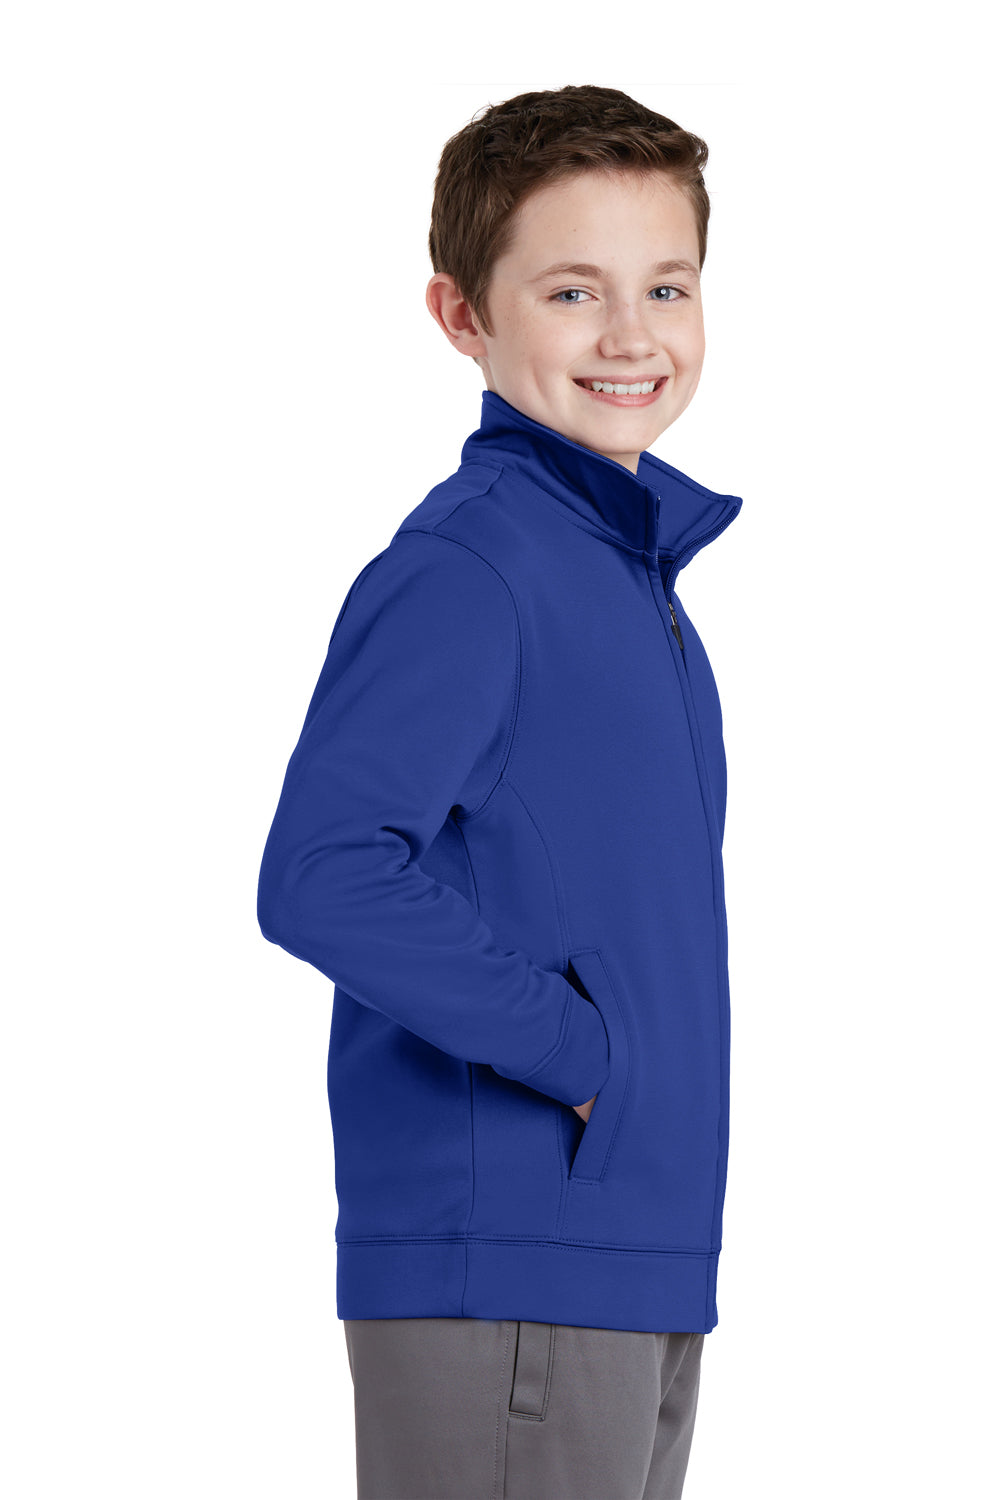 Sport-Tek YST241 Youth Sport-Wick Moisture Wicking Fleece Full Zip Sweatshirt Royal Blue Side